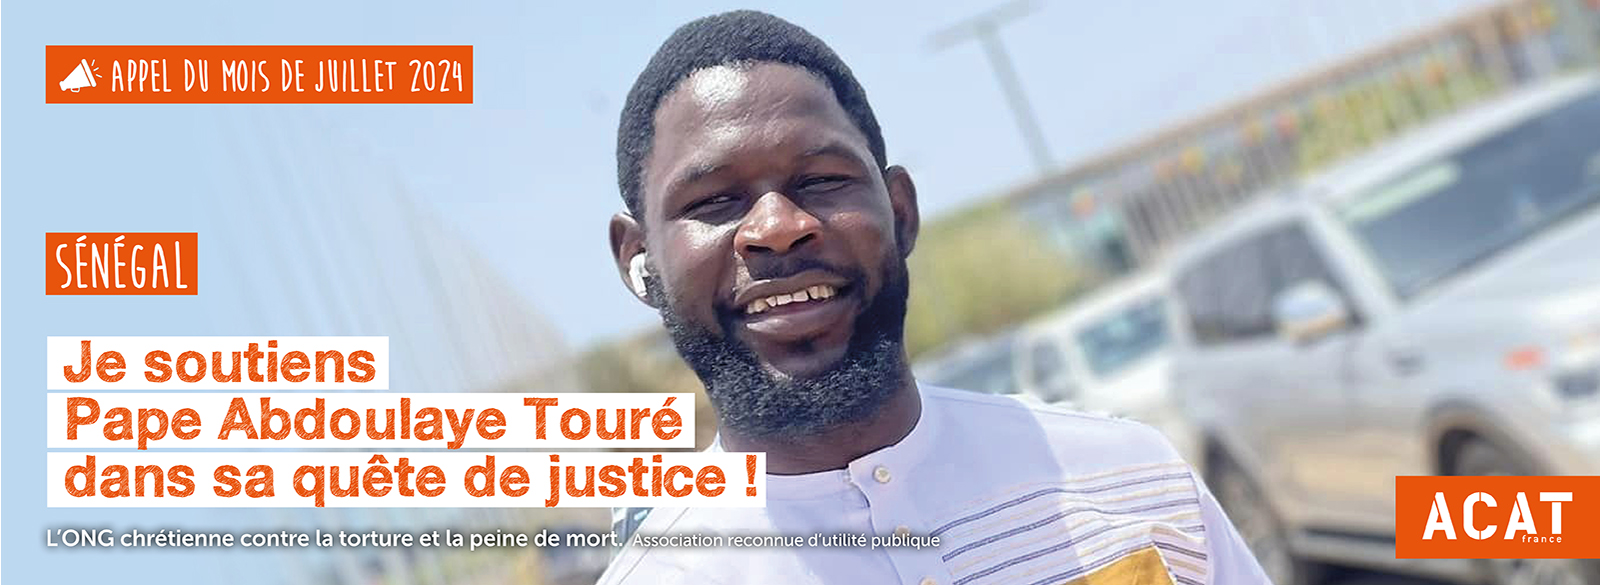 Je soutiens Pape Abdoulaye Touré dans sa quête de justice!